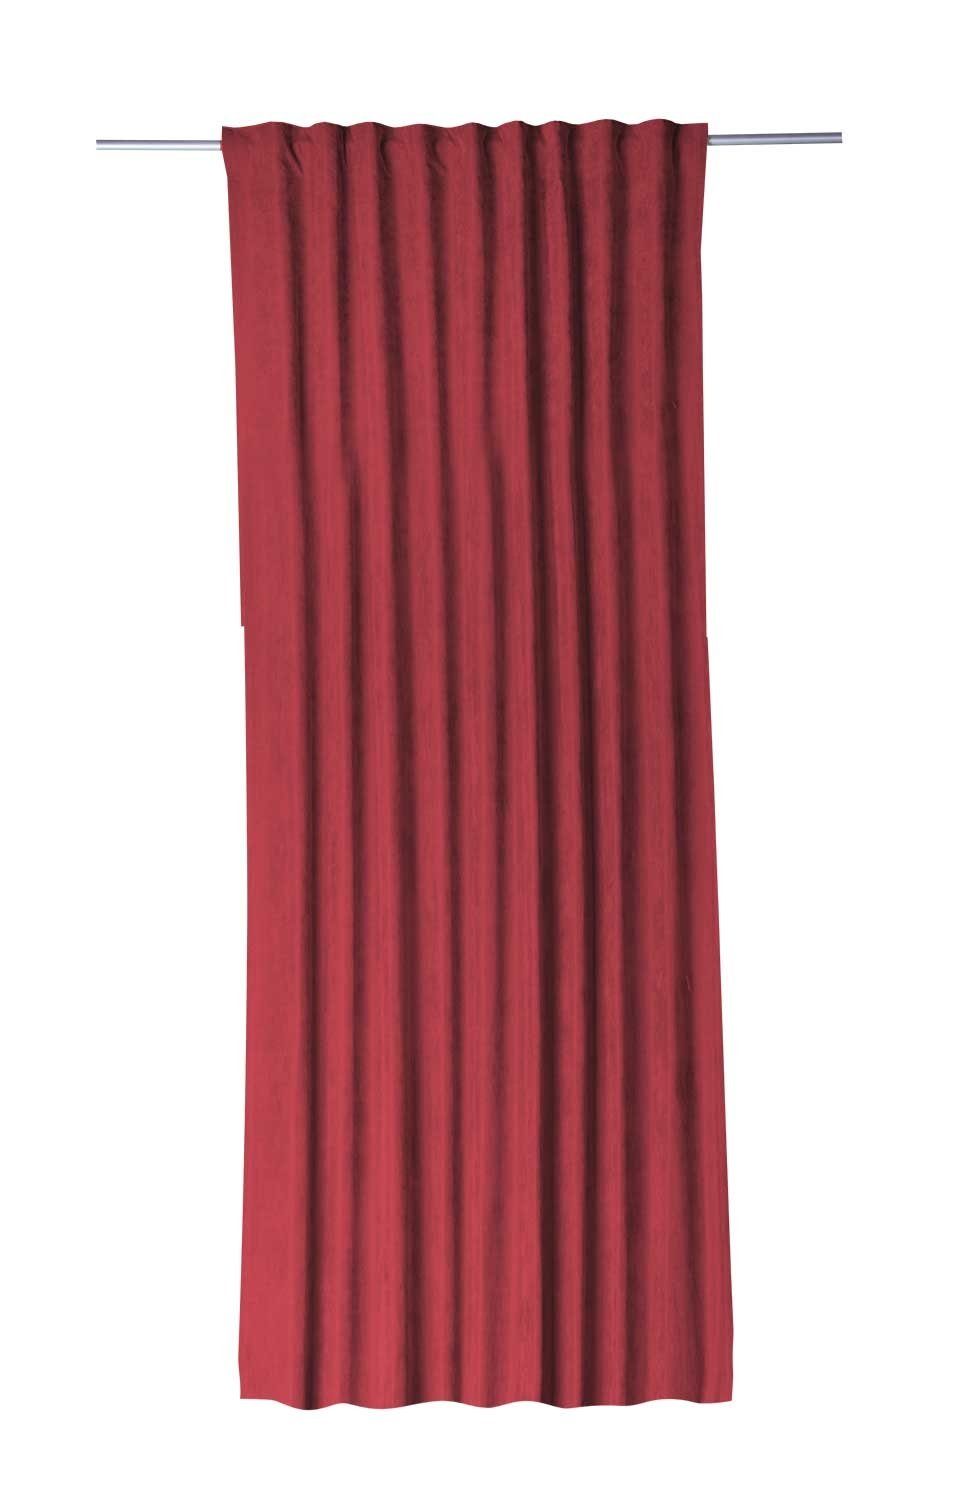 Vorhang Schlaufenvorhang, Rot, B 135 cm, L 245 cm, Gözze, verdeckte Schlaufen, halbtransparent